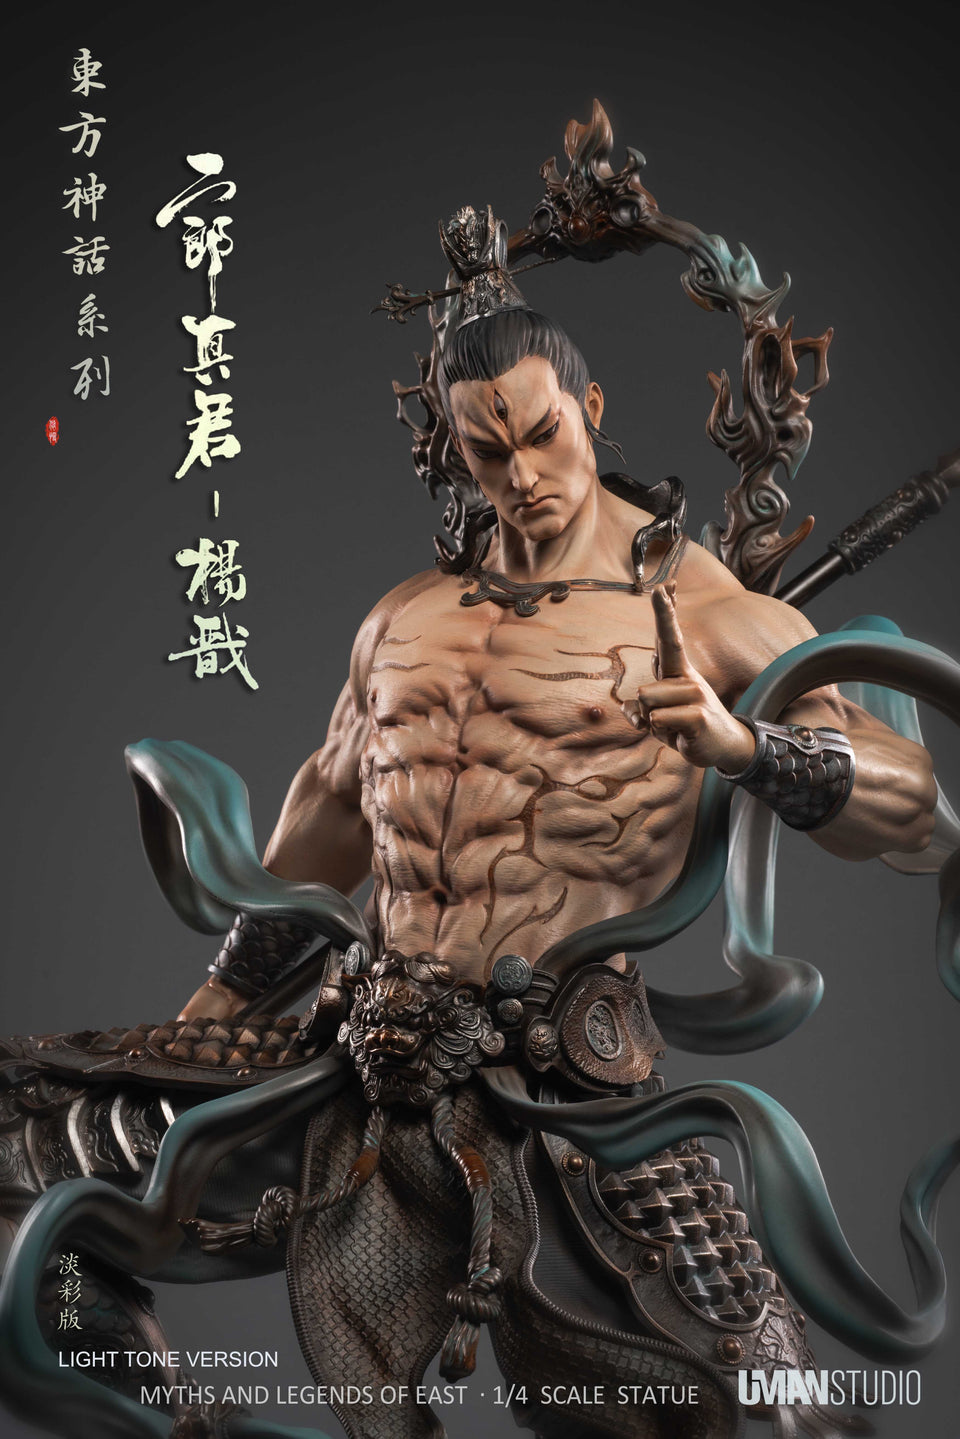 UMAN Studio Erlang Shen God (Myths and Legends of East) 1:4 Scale Statue